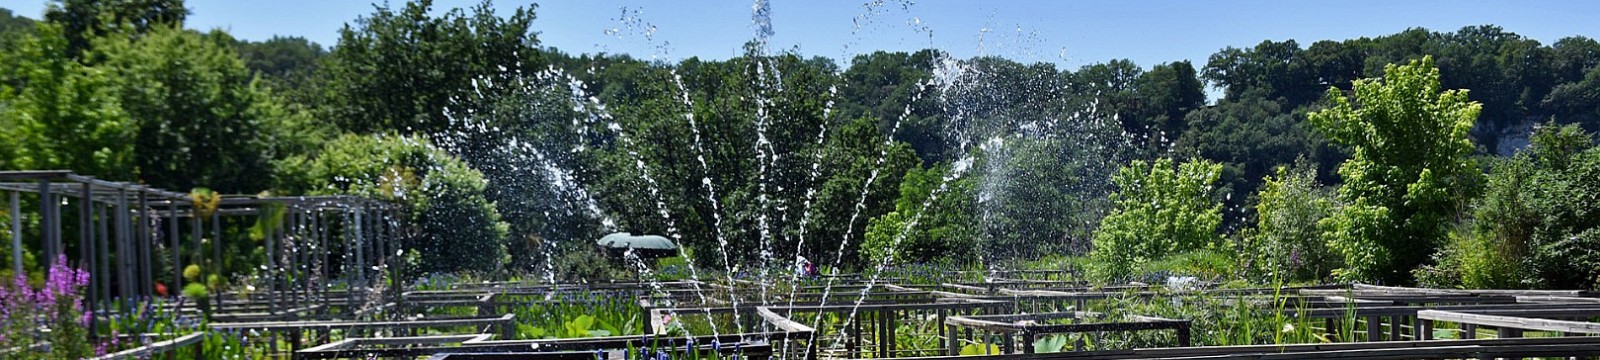 Die Wasser-Gärten von Carsac